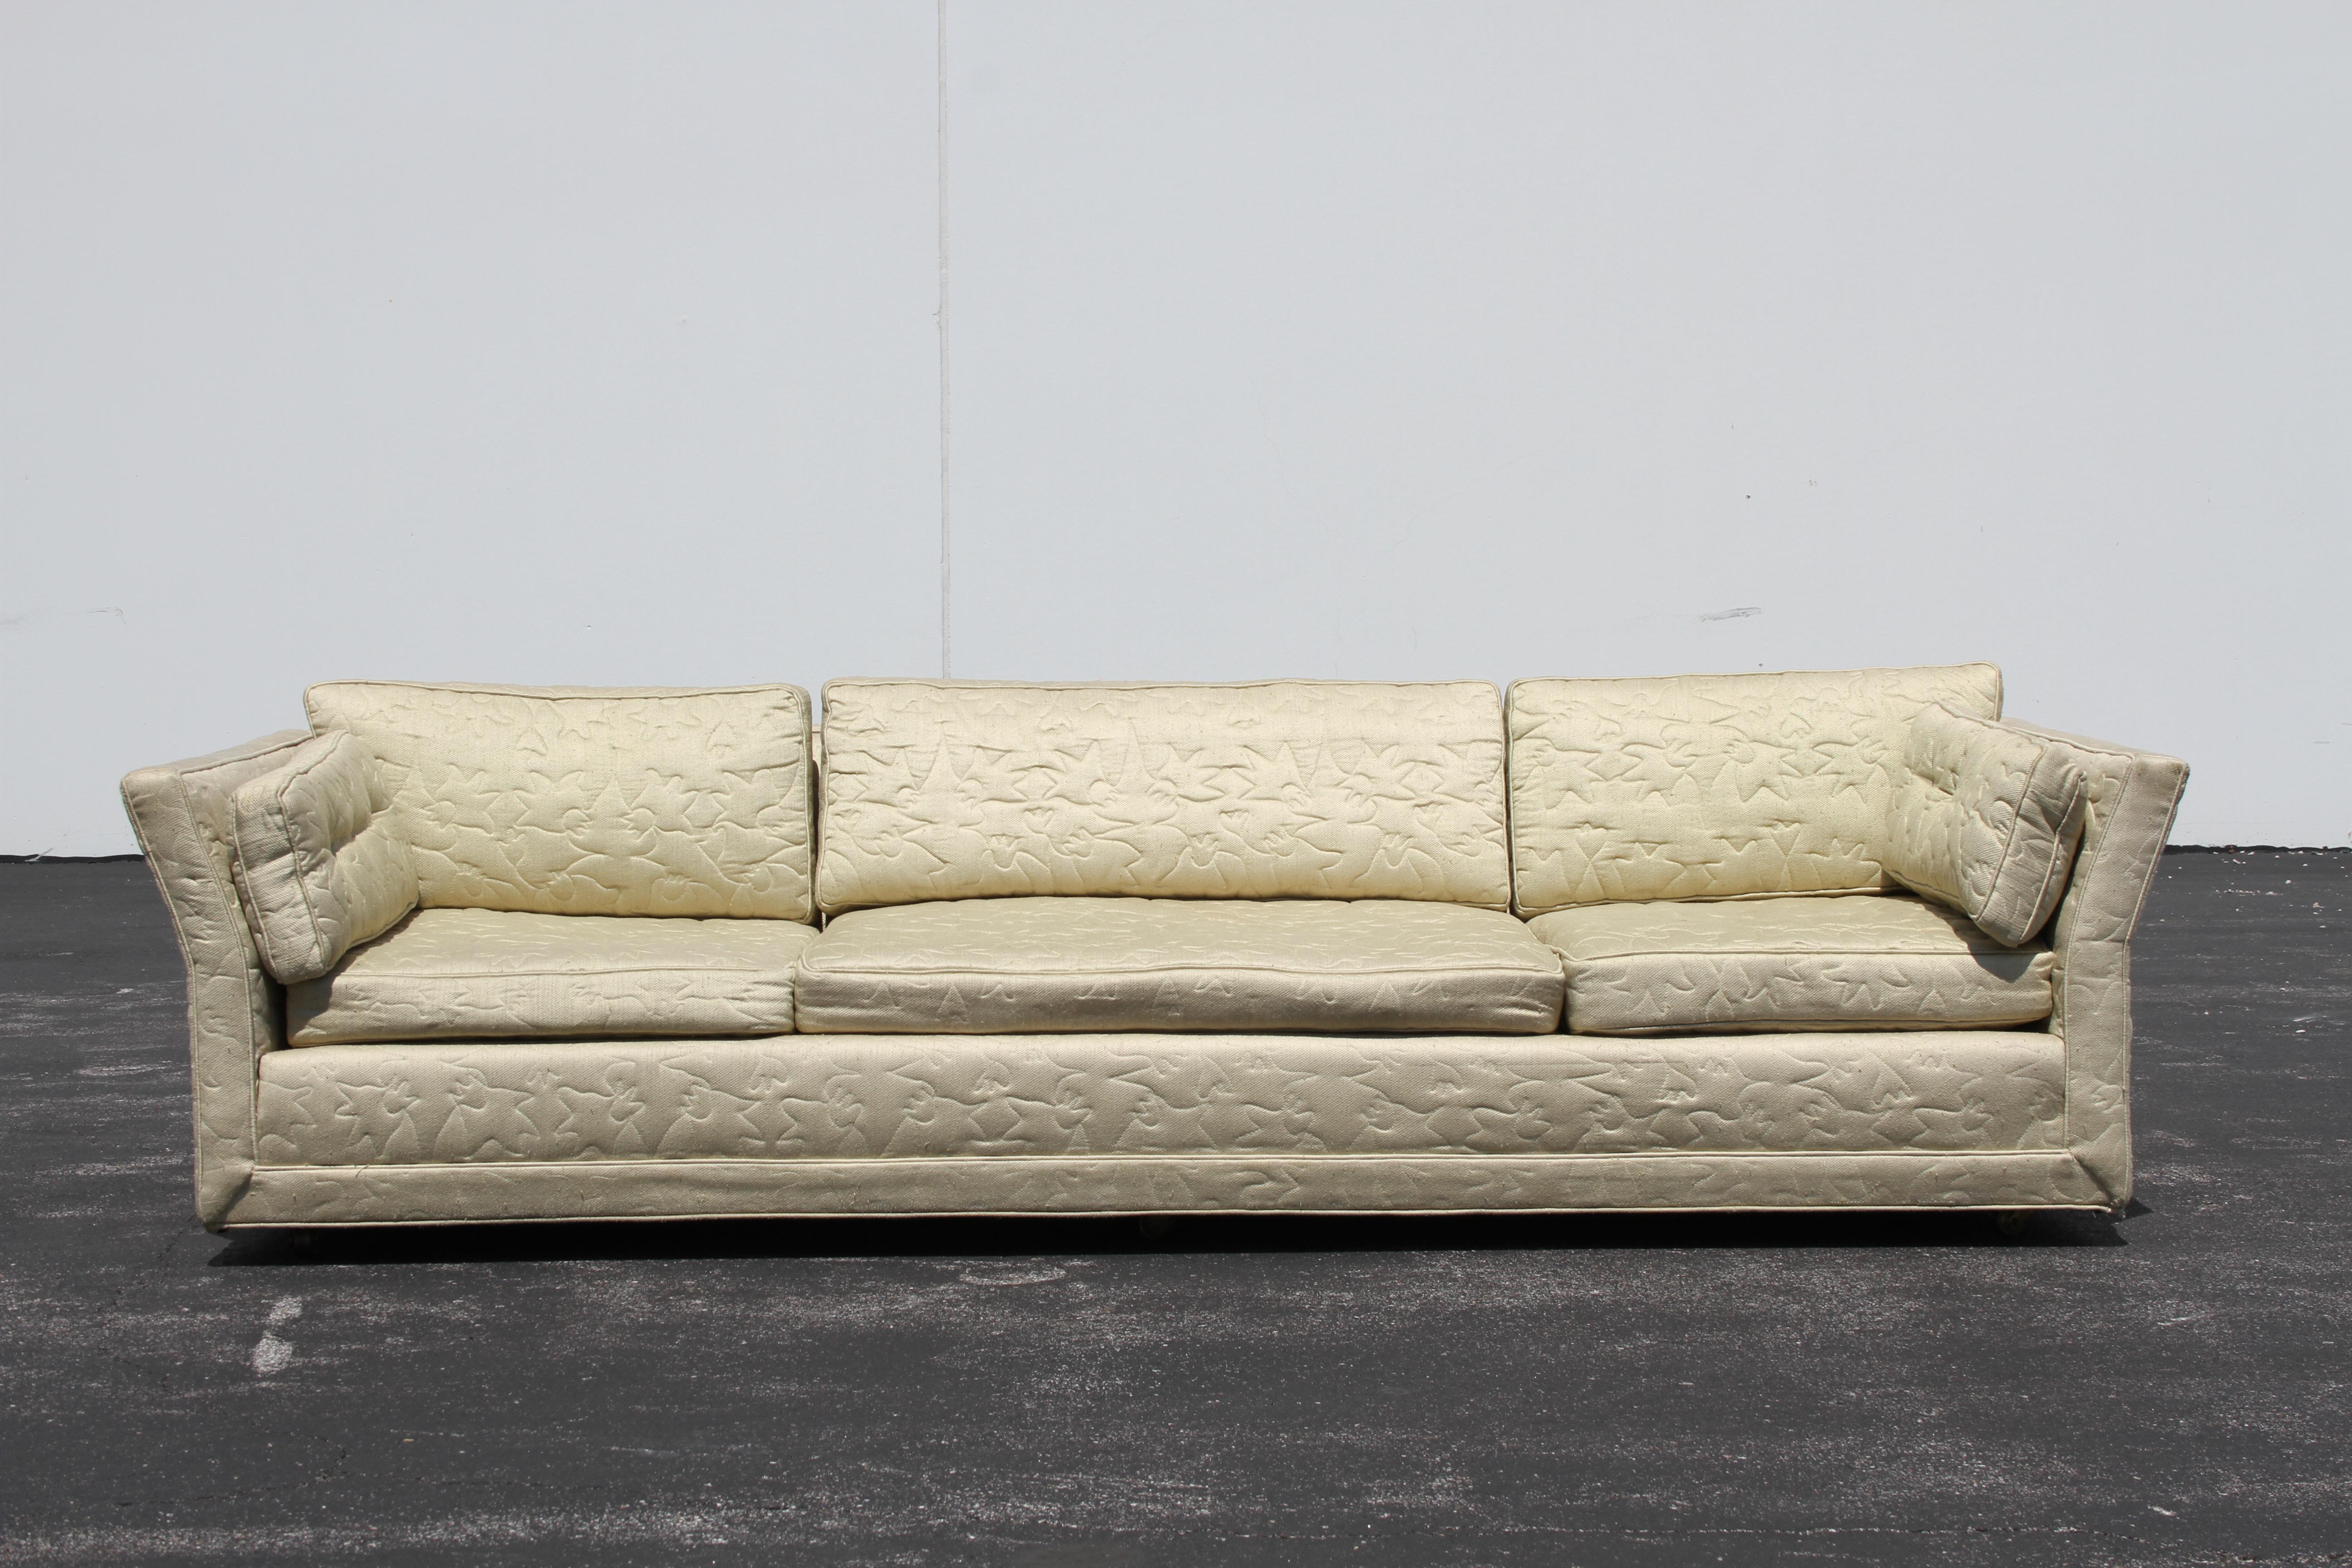 Originales Mid-Century Modern Sofa von Flair Inc. mit abgewinkelten Armlehnen auf Messingrollen, restaurierungsbedürftig. Dieses Sofa hat große Knochen, in der ursprünglichen gesteppten Polsterung, die Verschleiß und Flecken hat gezeigt. Strukturell